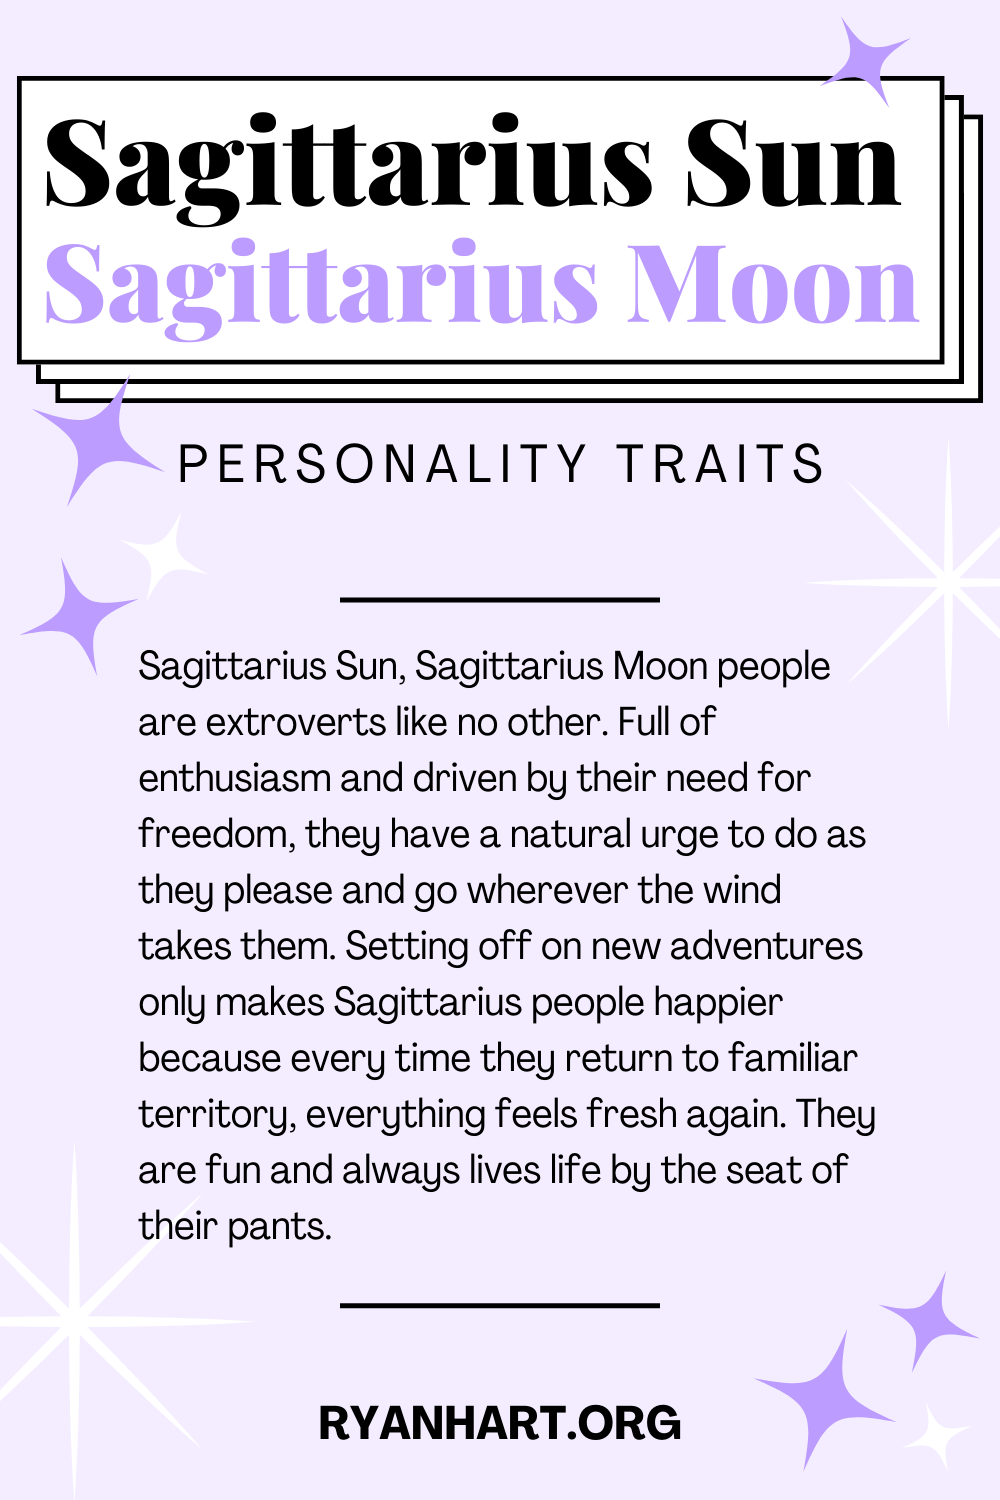 Sagittarius Sun Sagittarius Moon Description